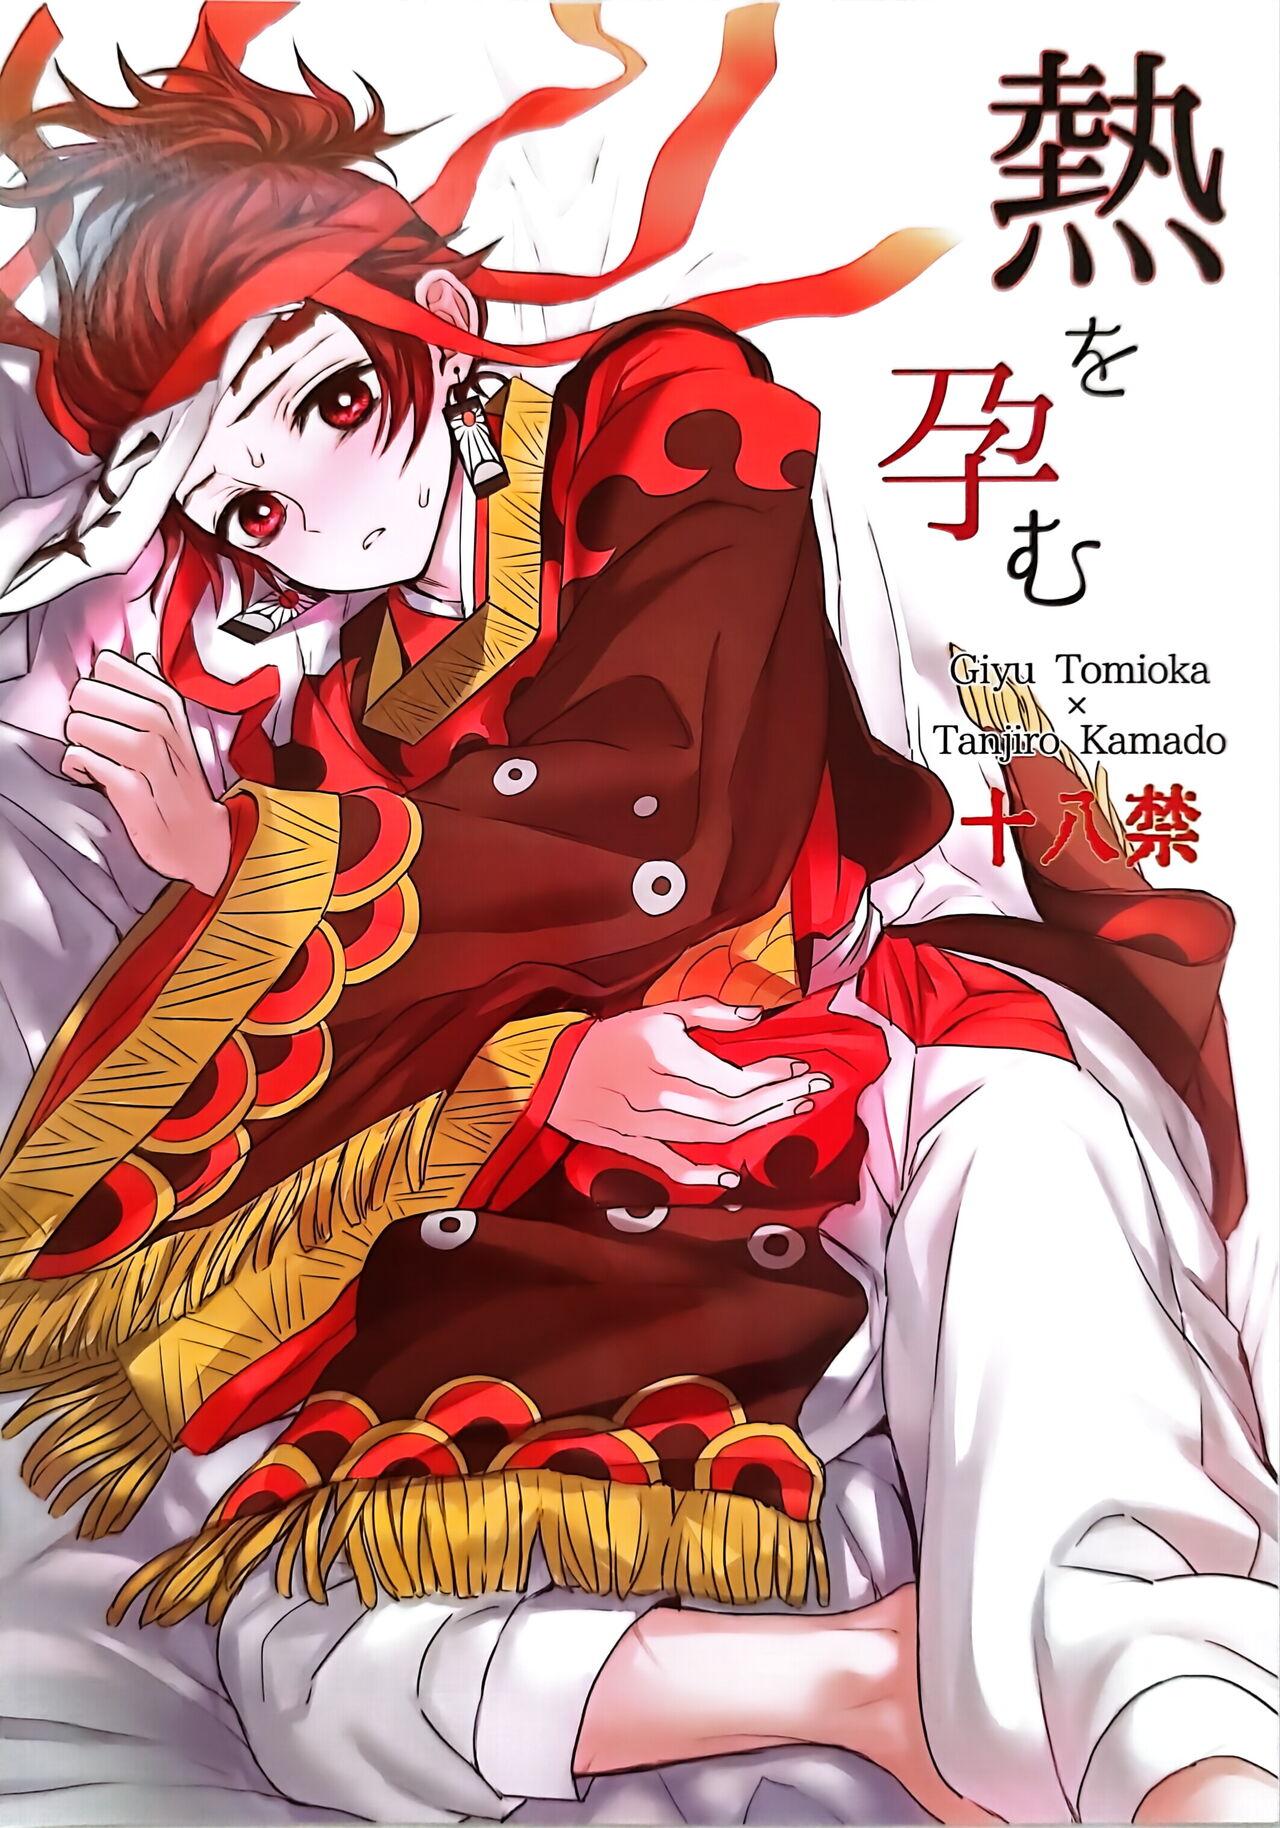 Stunning Netsu o Haramu - Kimetsu no yaiba | demon slayer Gaystraight - Picture 1